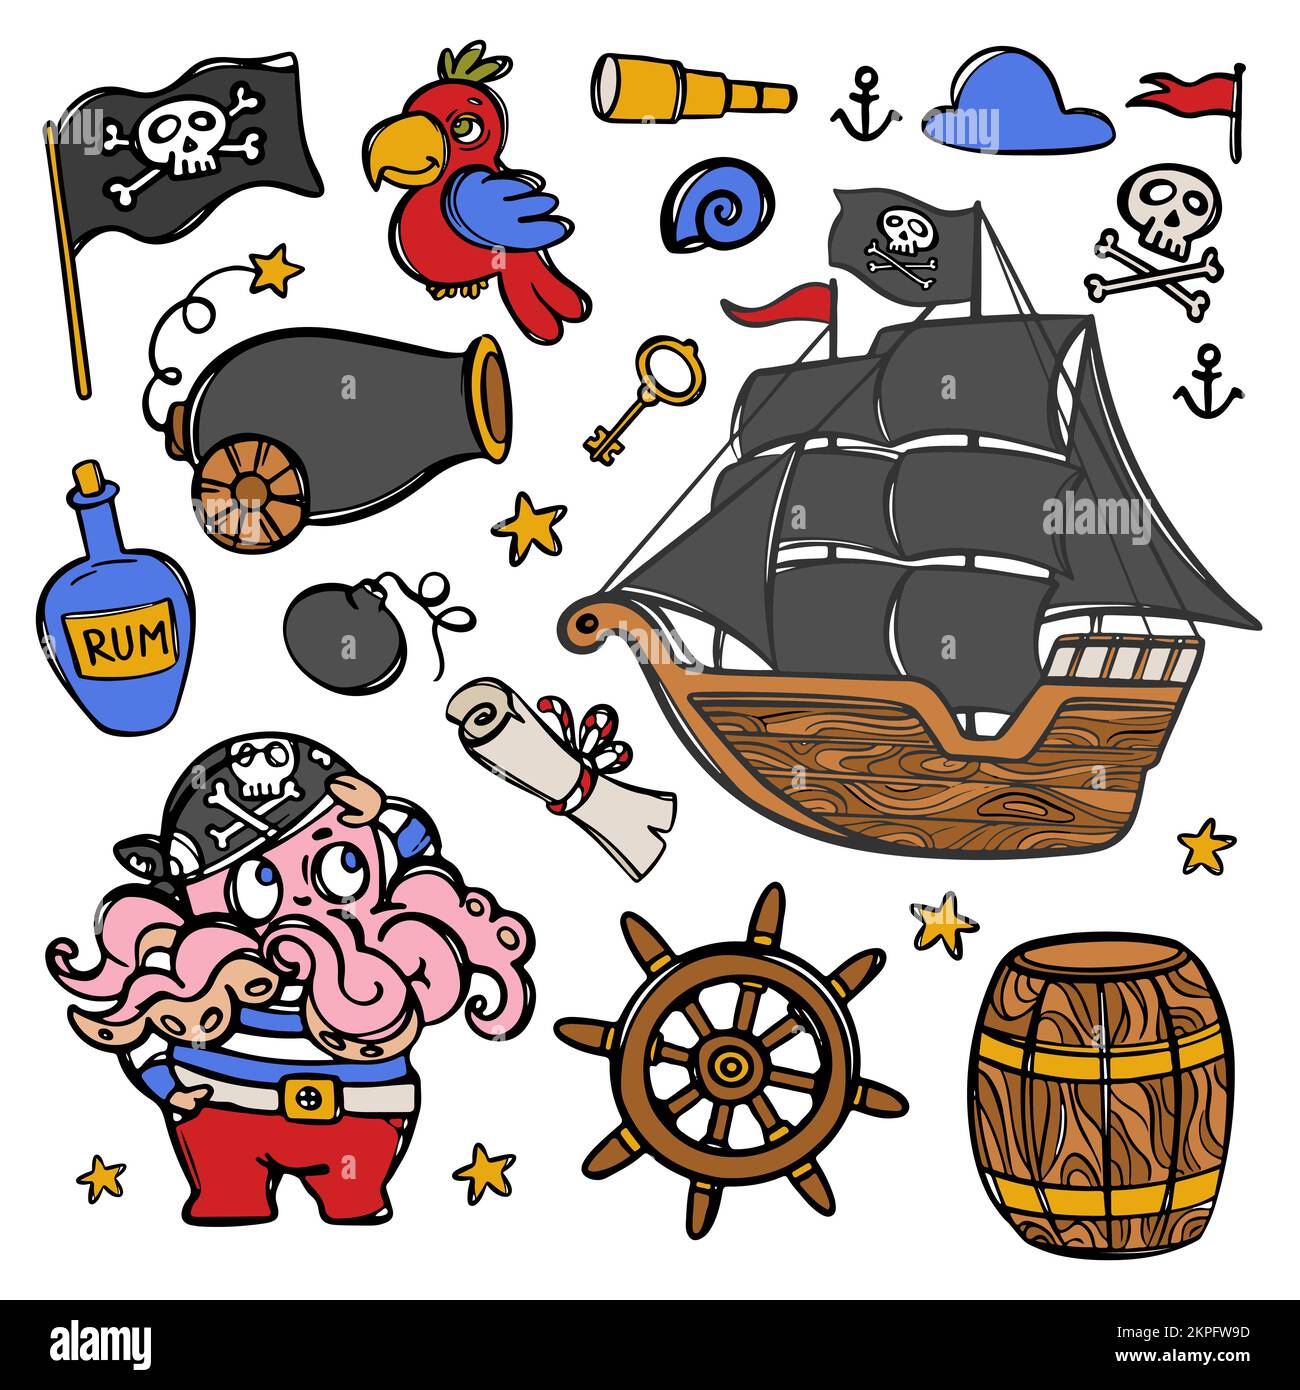 TINTENFISCH-PIRAT und Segelboot mit schwarzen Segeln und Schädelflagge auf Mast Handgezeichnete Cartoon Clipart Sea Attributes and Objects Vector Illustration Set für Stock Vektor